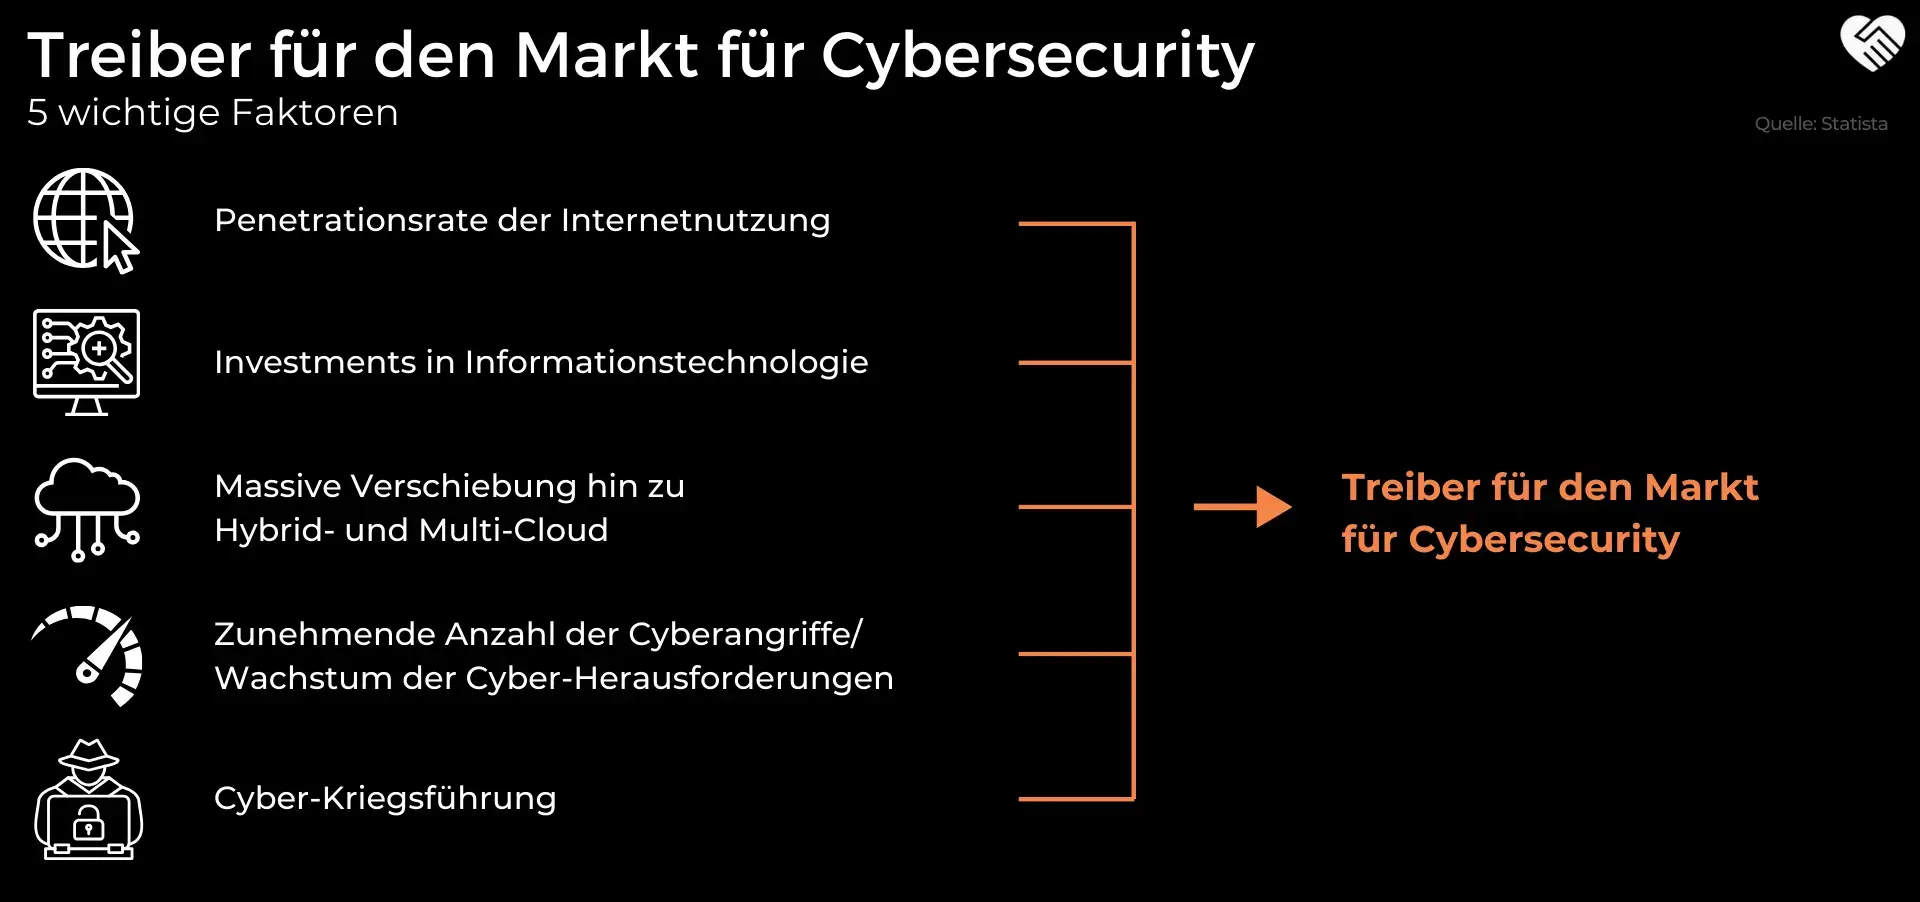 5 wichtige Faktoren für den Markt für Cyber Security